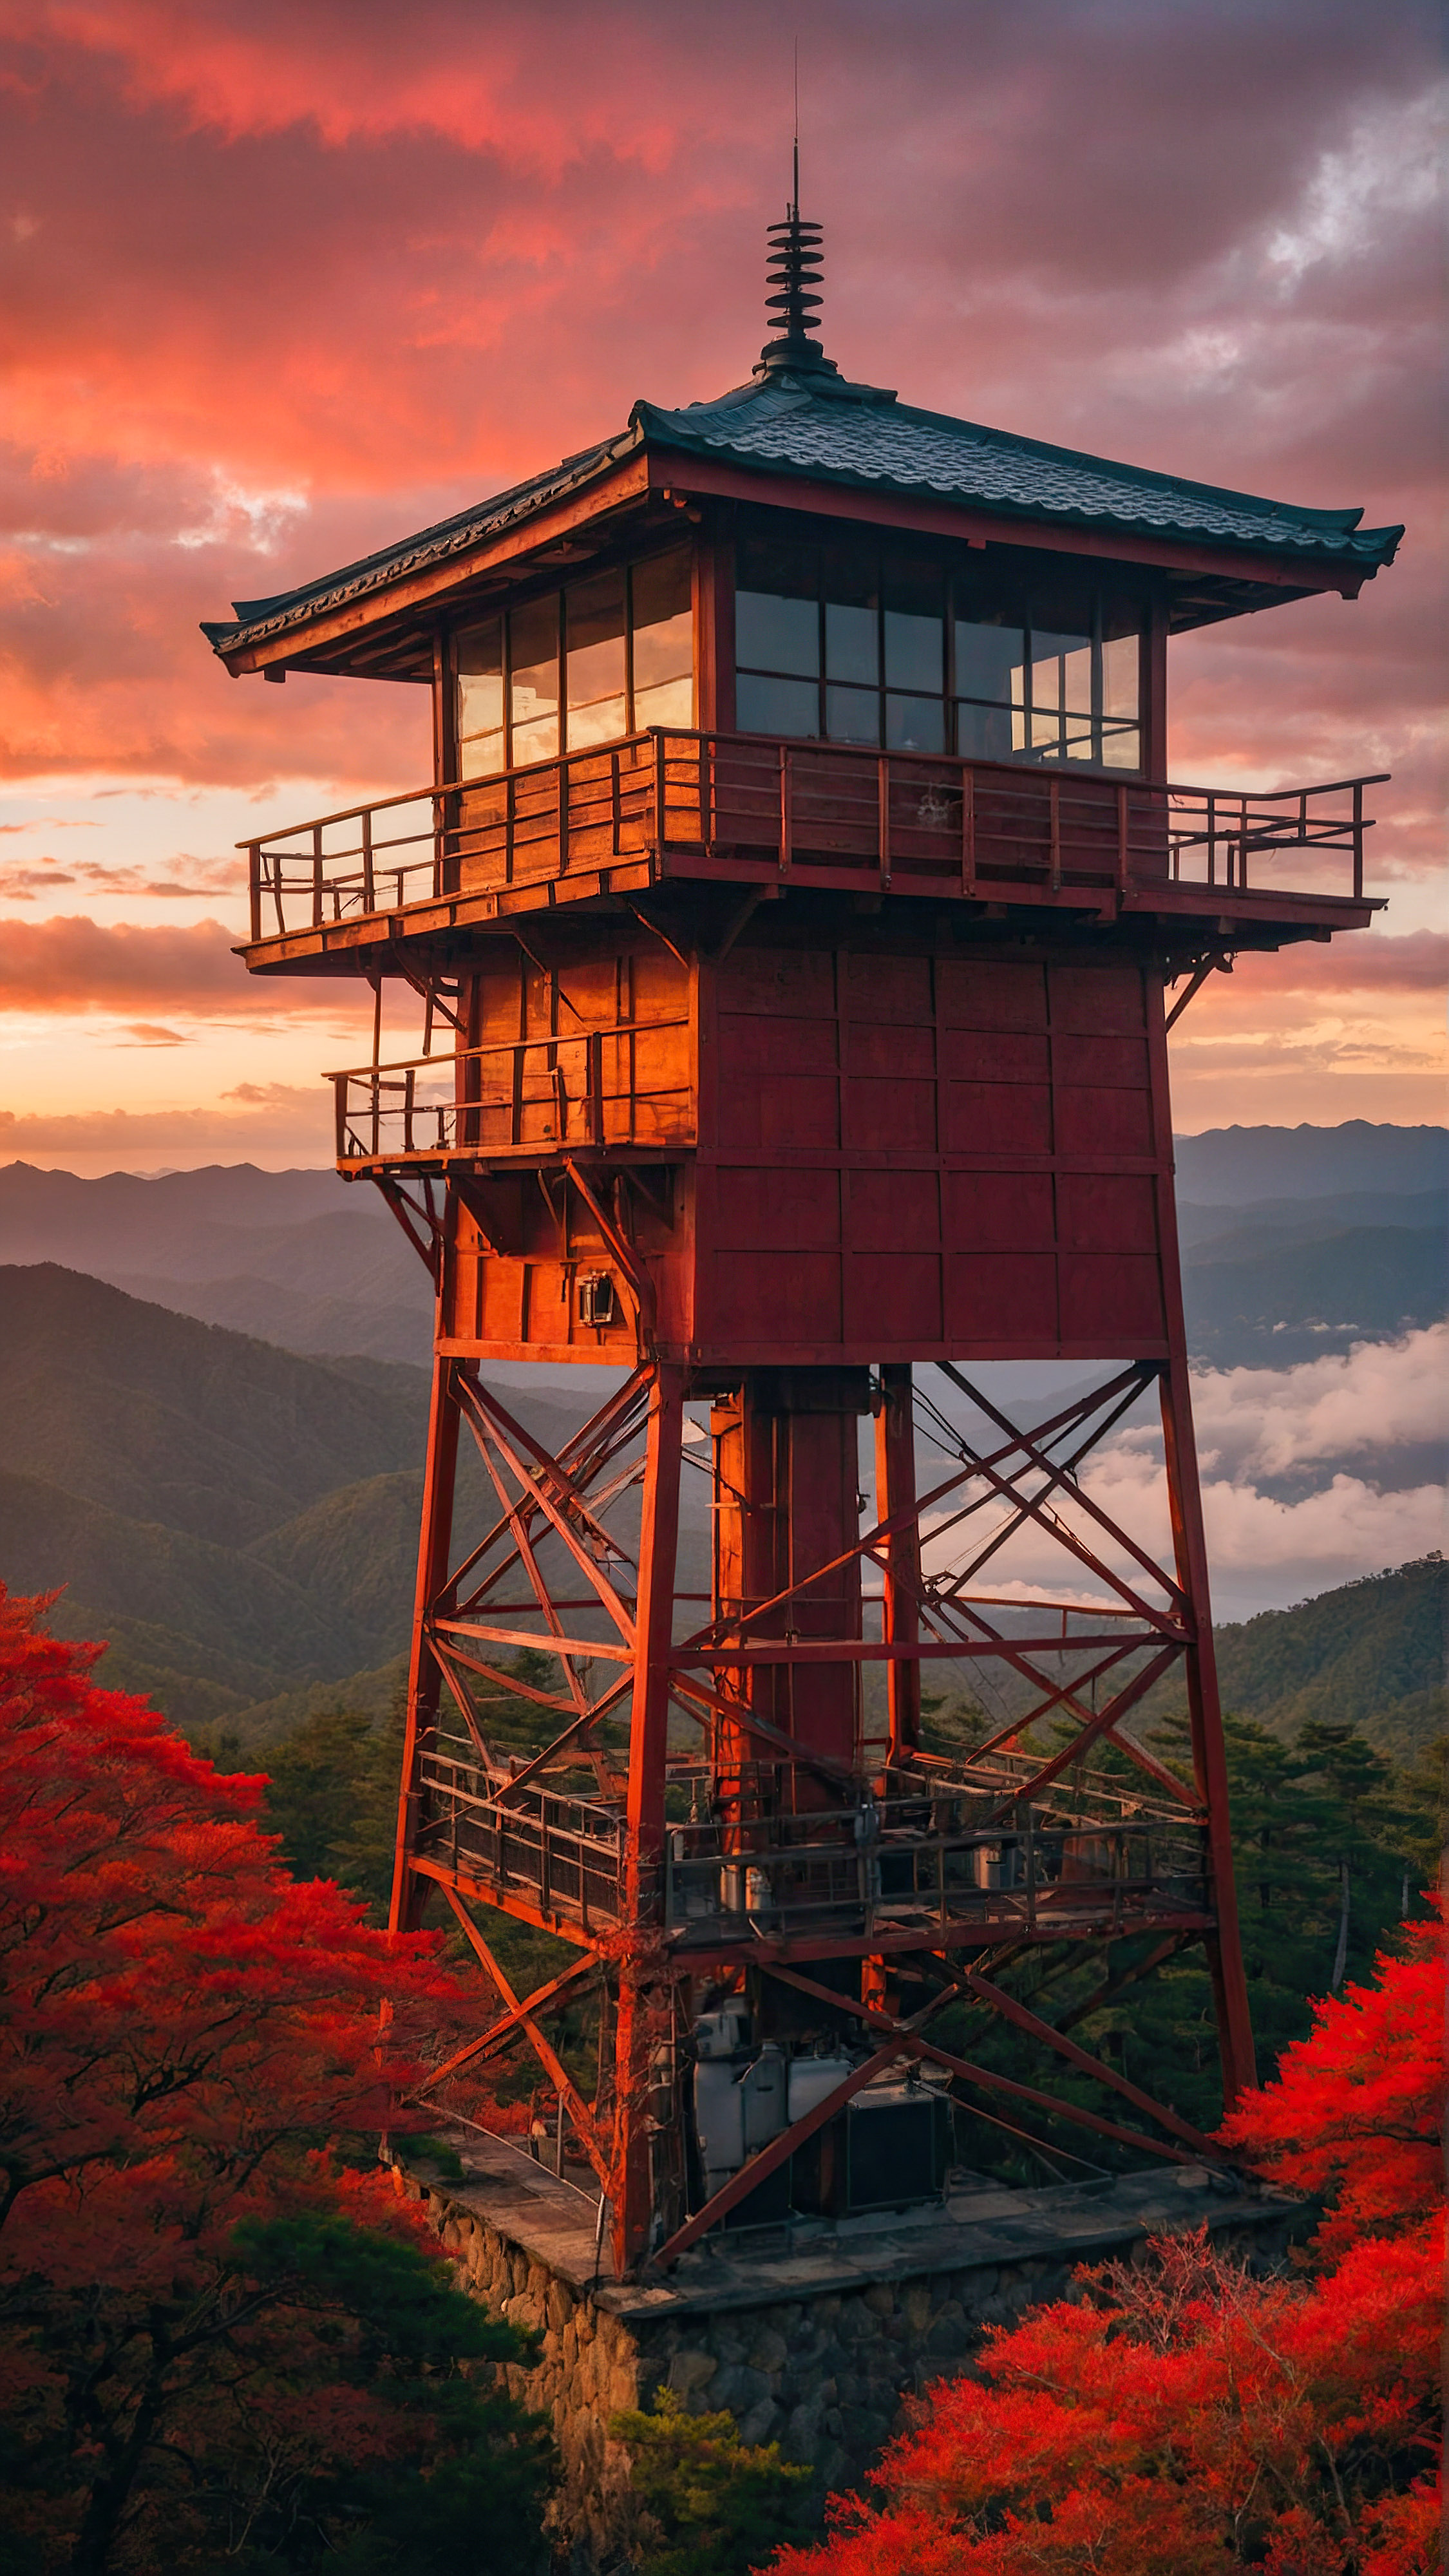 Transformez l'apparence de votre téléphone avec un fond d'écran esthétique, capturant une scène japonaise sereine et pittoresque d'une tour de guet au milieu d'une forêt avec des montagnes en arrière-plan, sous un ciel rouge vibrant avec le soleil se couchant ou se levant.